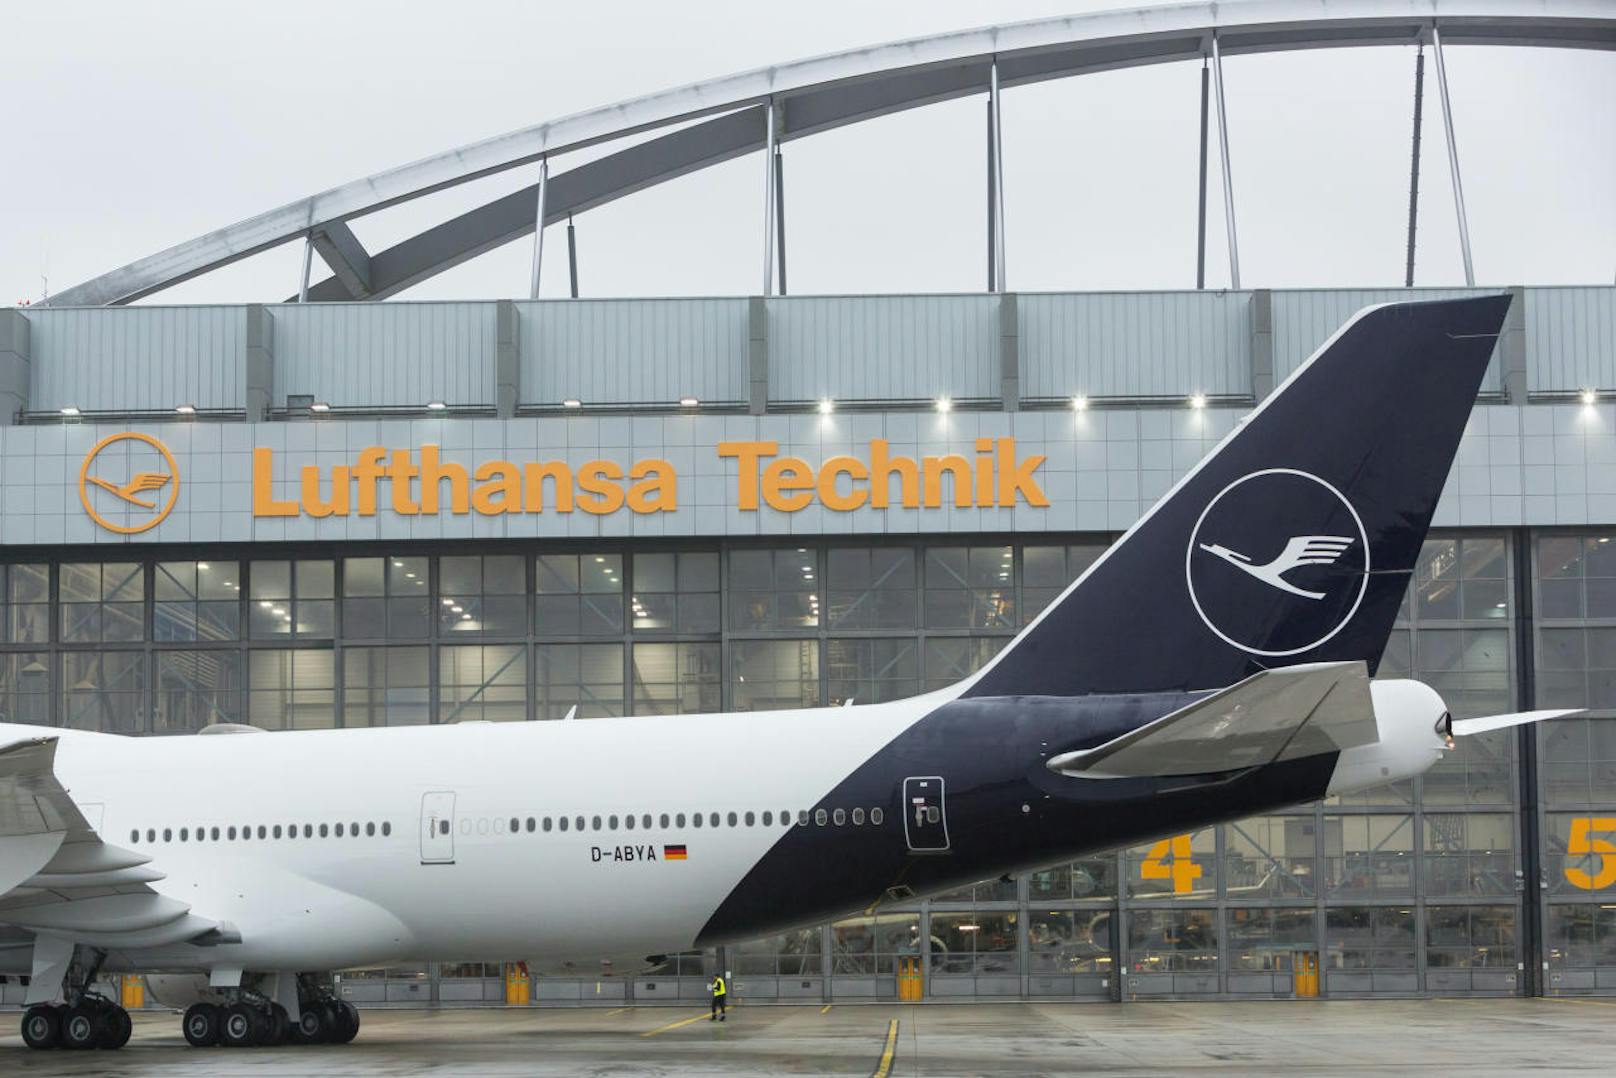 Mit Lufthansa Aviation Training betreibt das Unternehmen Schulungszentren für Piloten und Flugbegleiter.